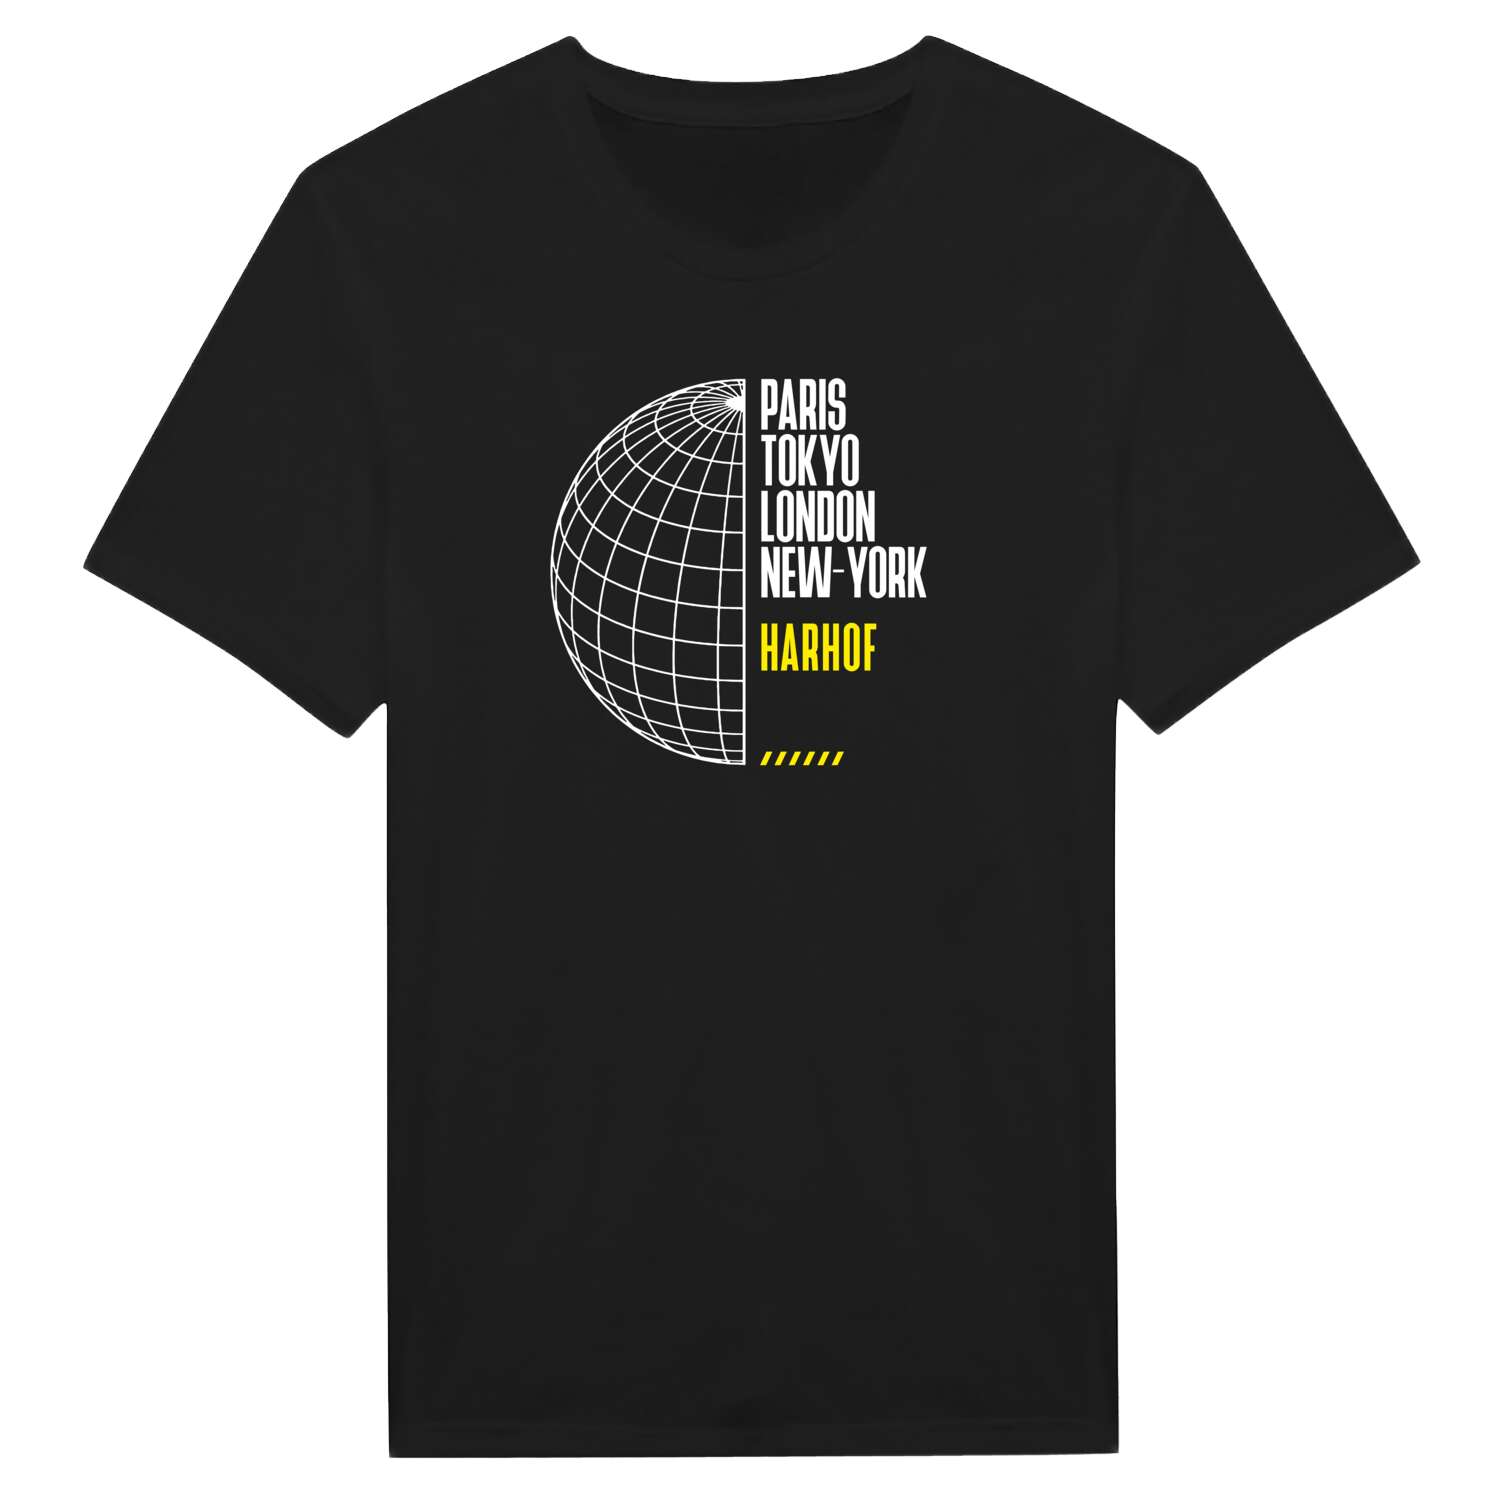 Harhof T-Shirt »Paris Tokyo London«